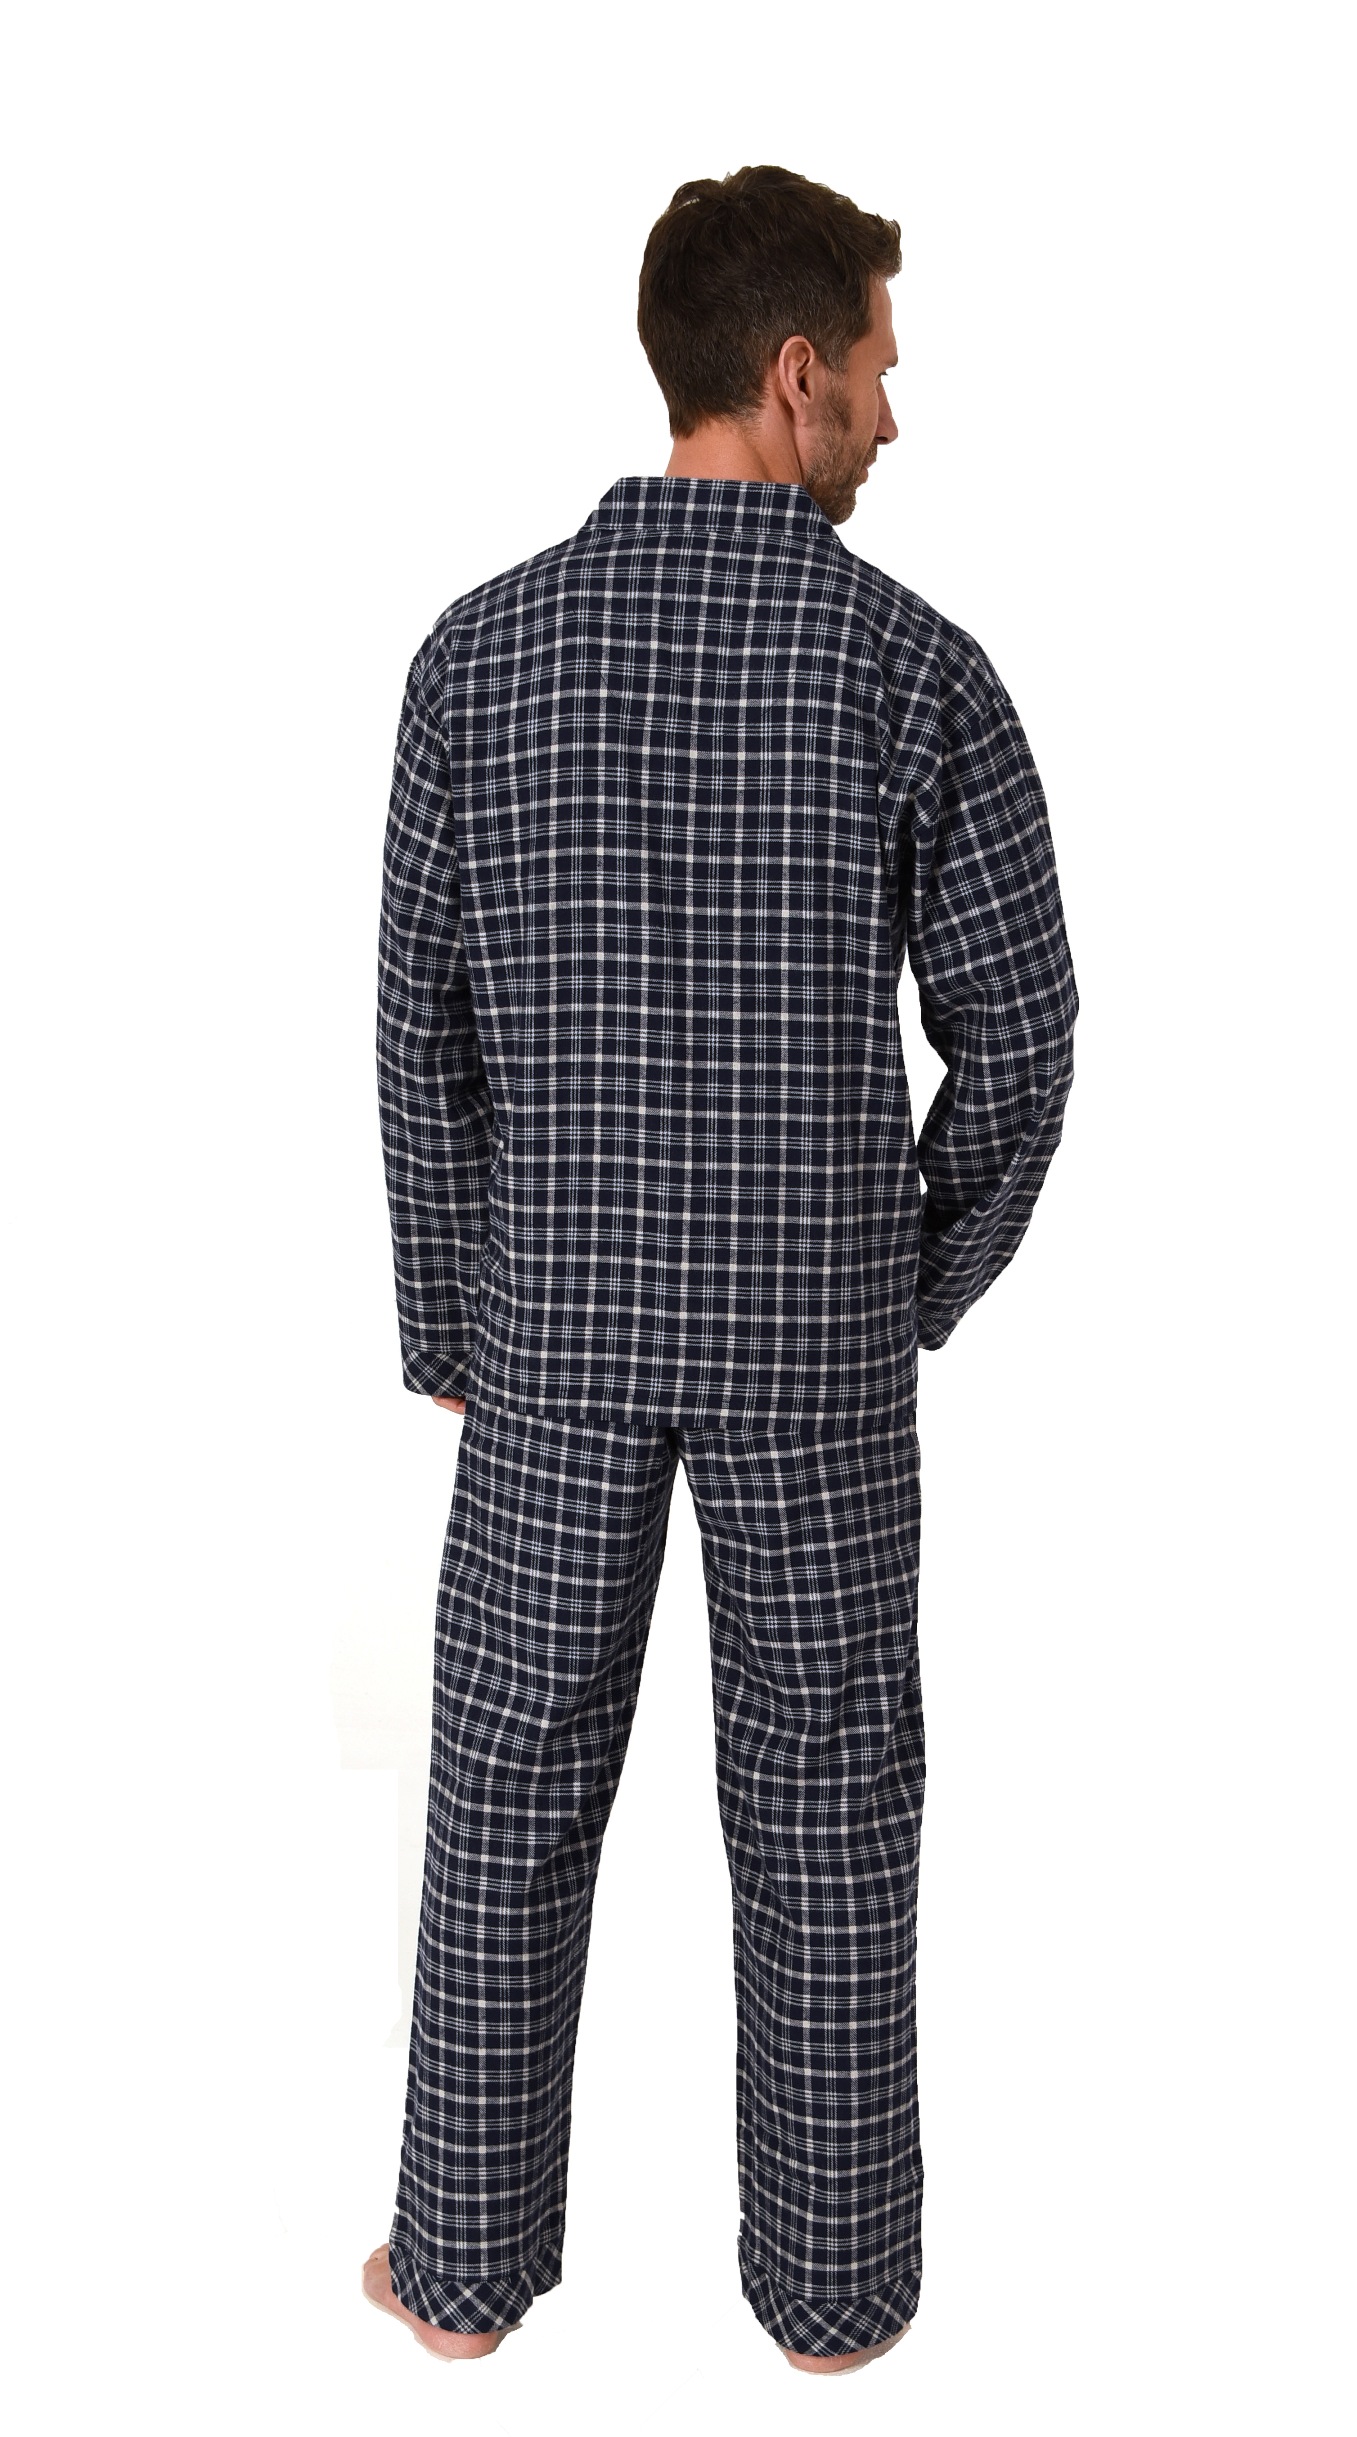 Herren Flanell Pyjama Schlafanzug zum durchknöpfen - auch in Übergrössen - 222 101 15 851